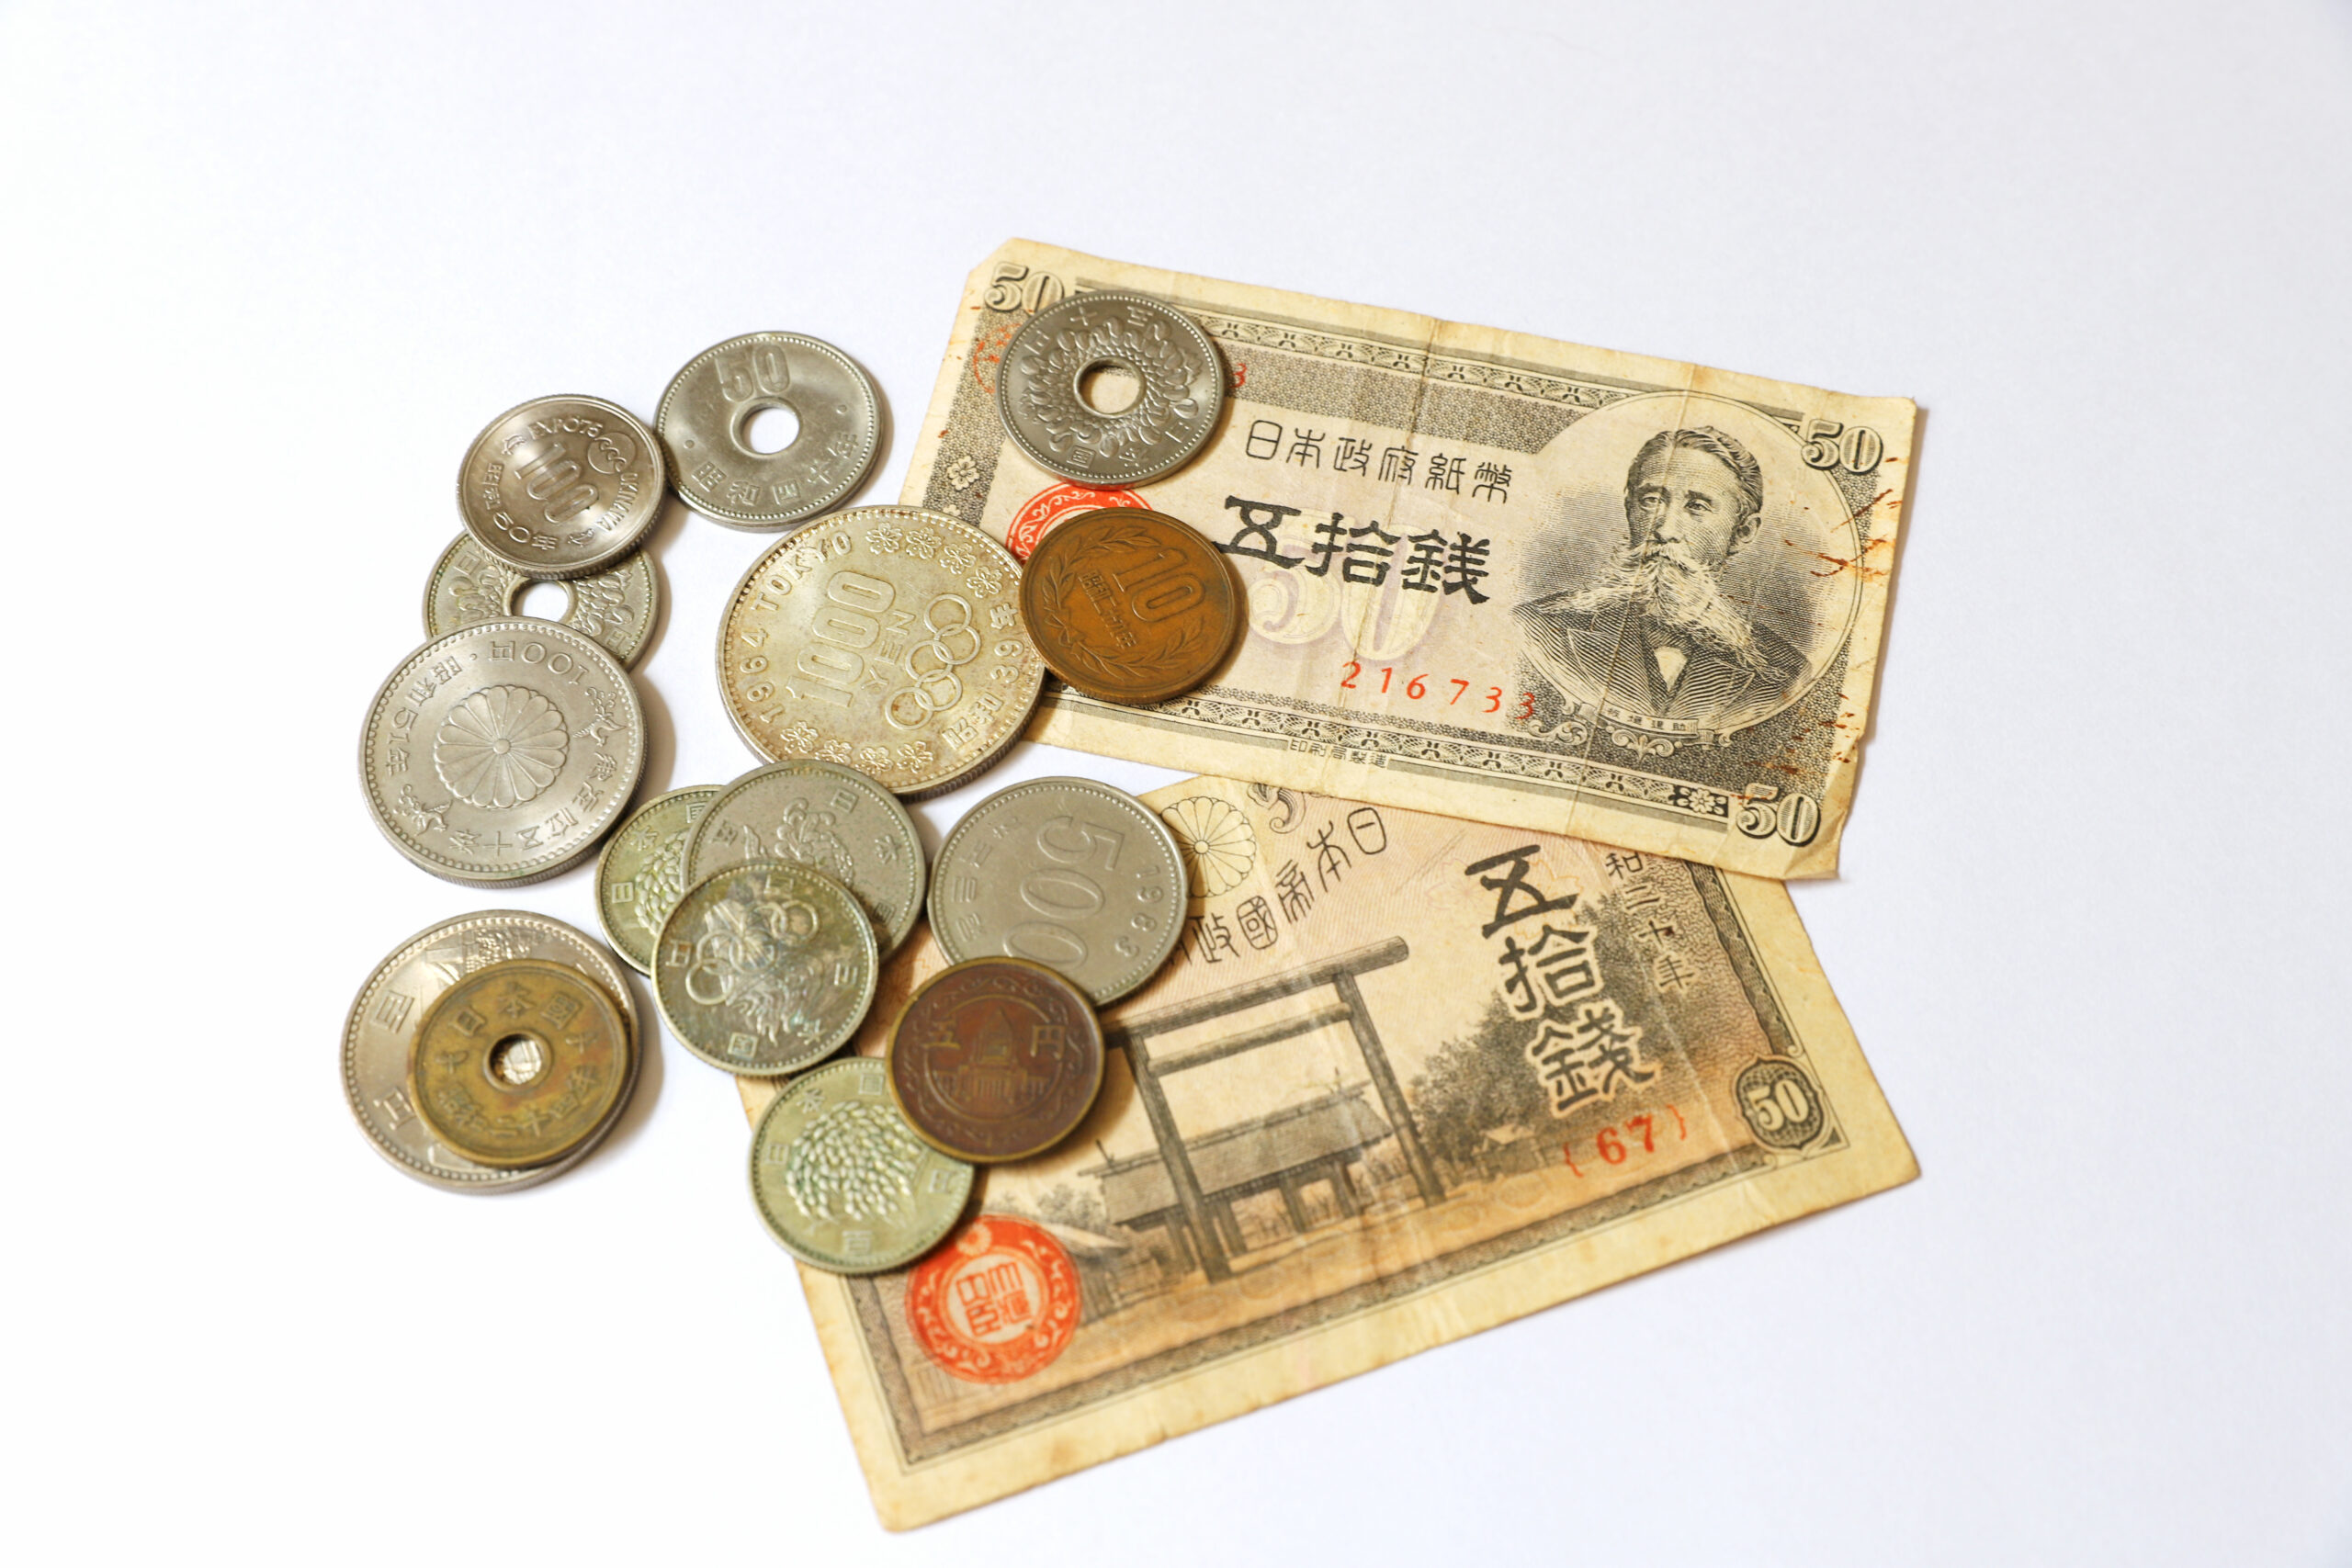 旧貨幣・古貨幣・旧貨幣・小判の買取